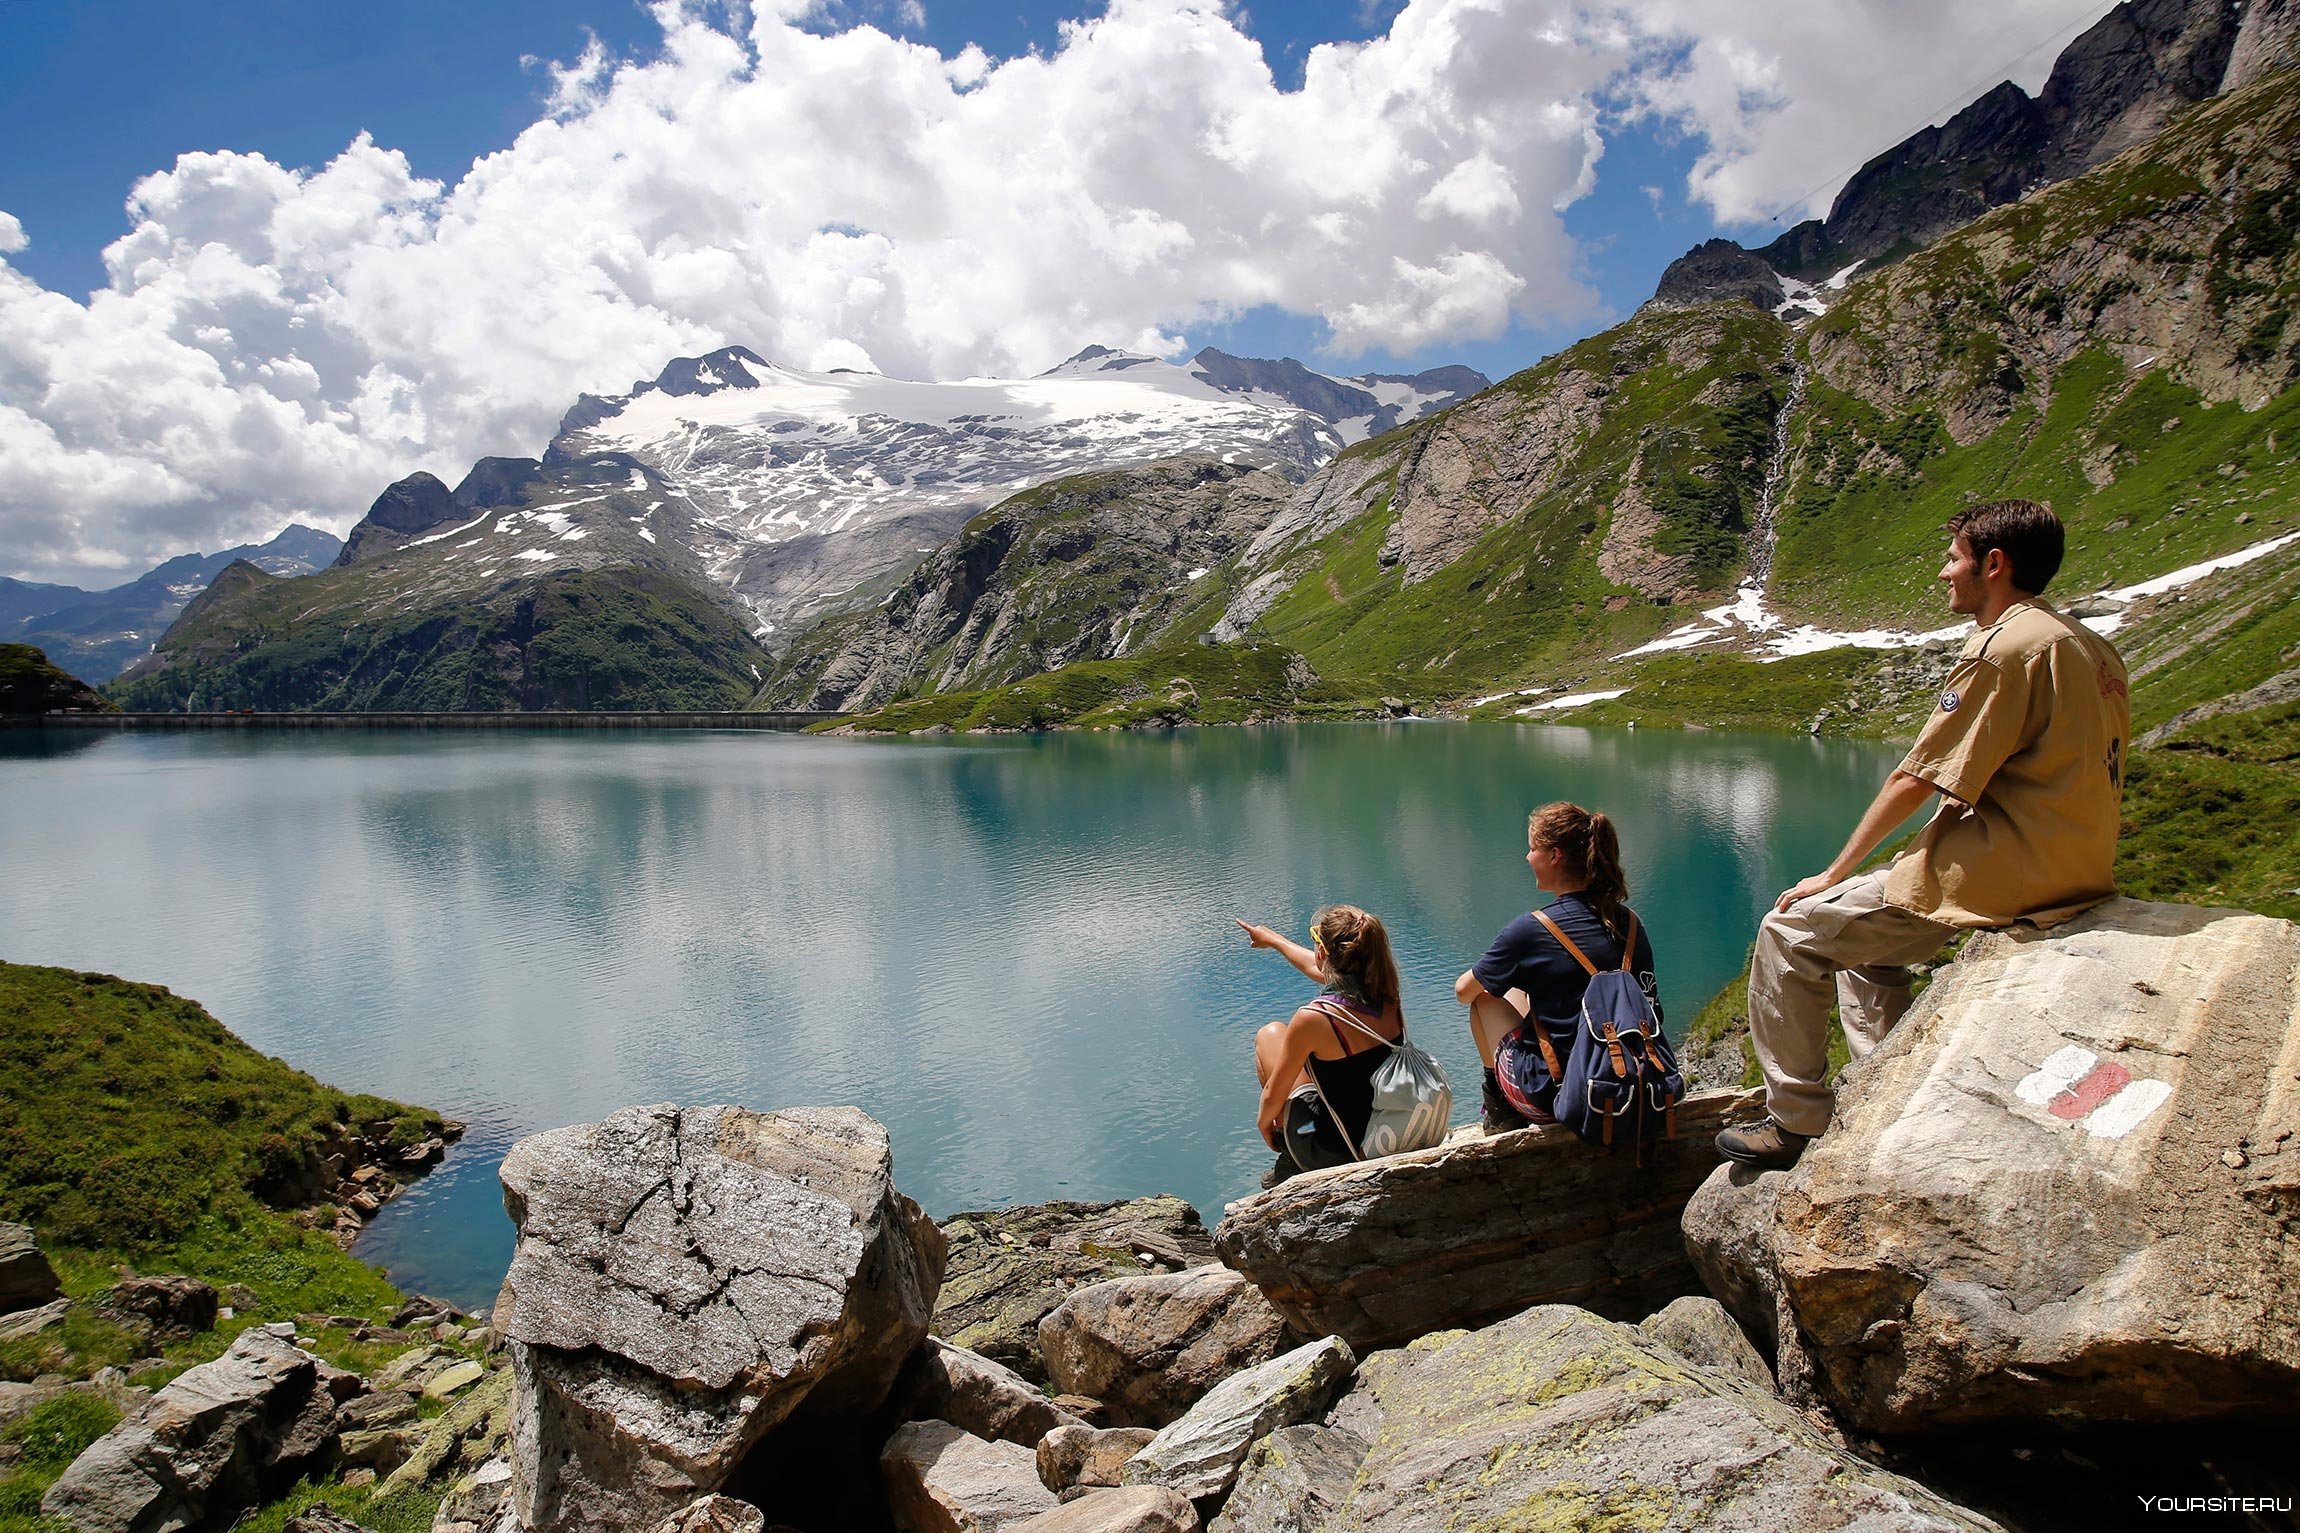 Www tourism. Туристы в Швейцарии. Этнотуризм Швейцарии. Швейцария туризм. Познавательный туризм в Швейцарии.